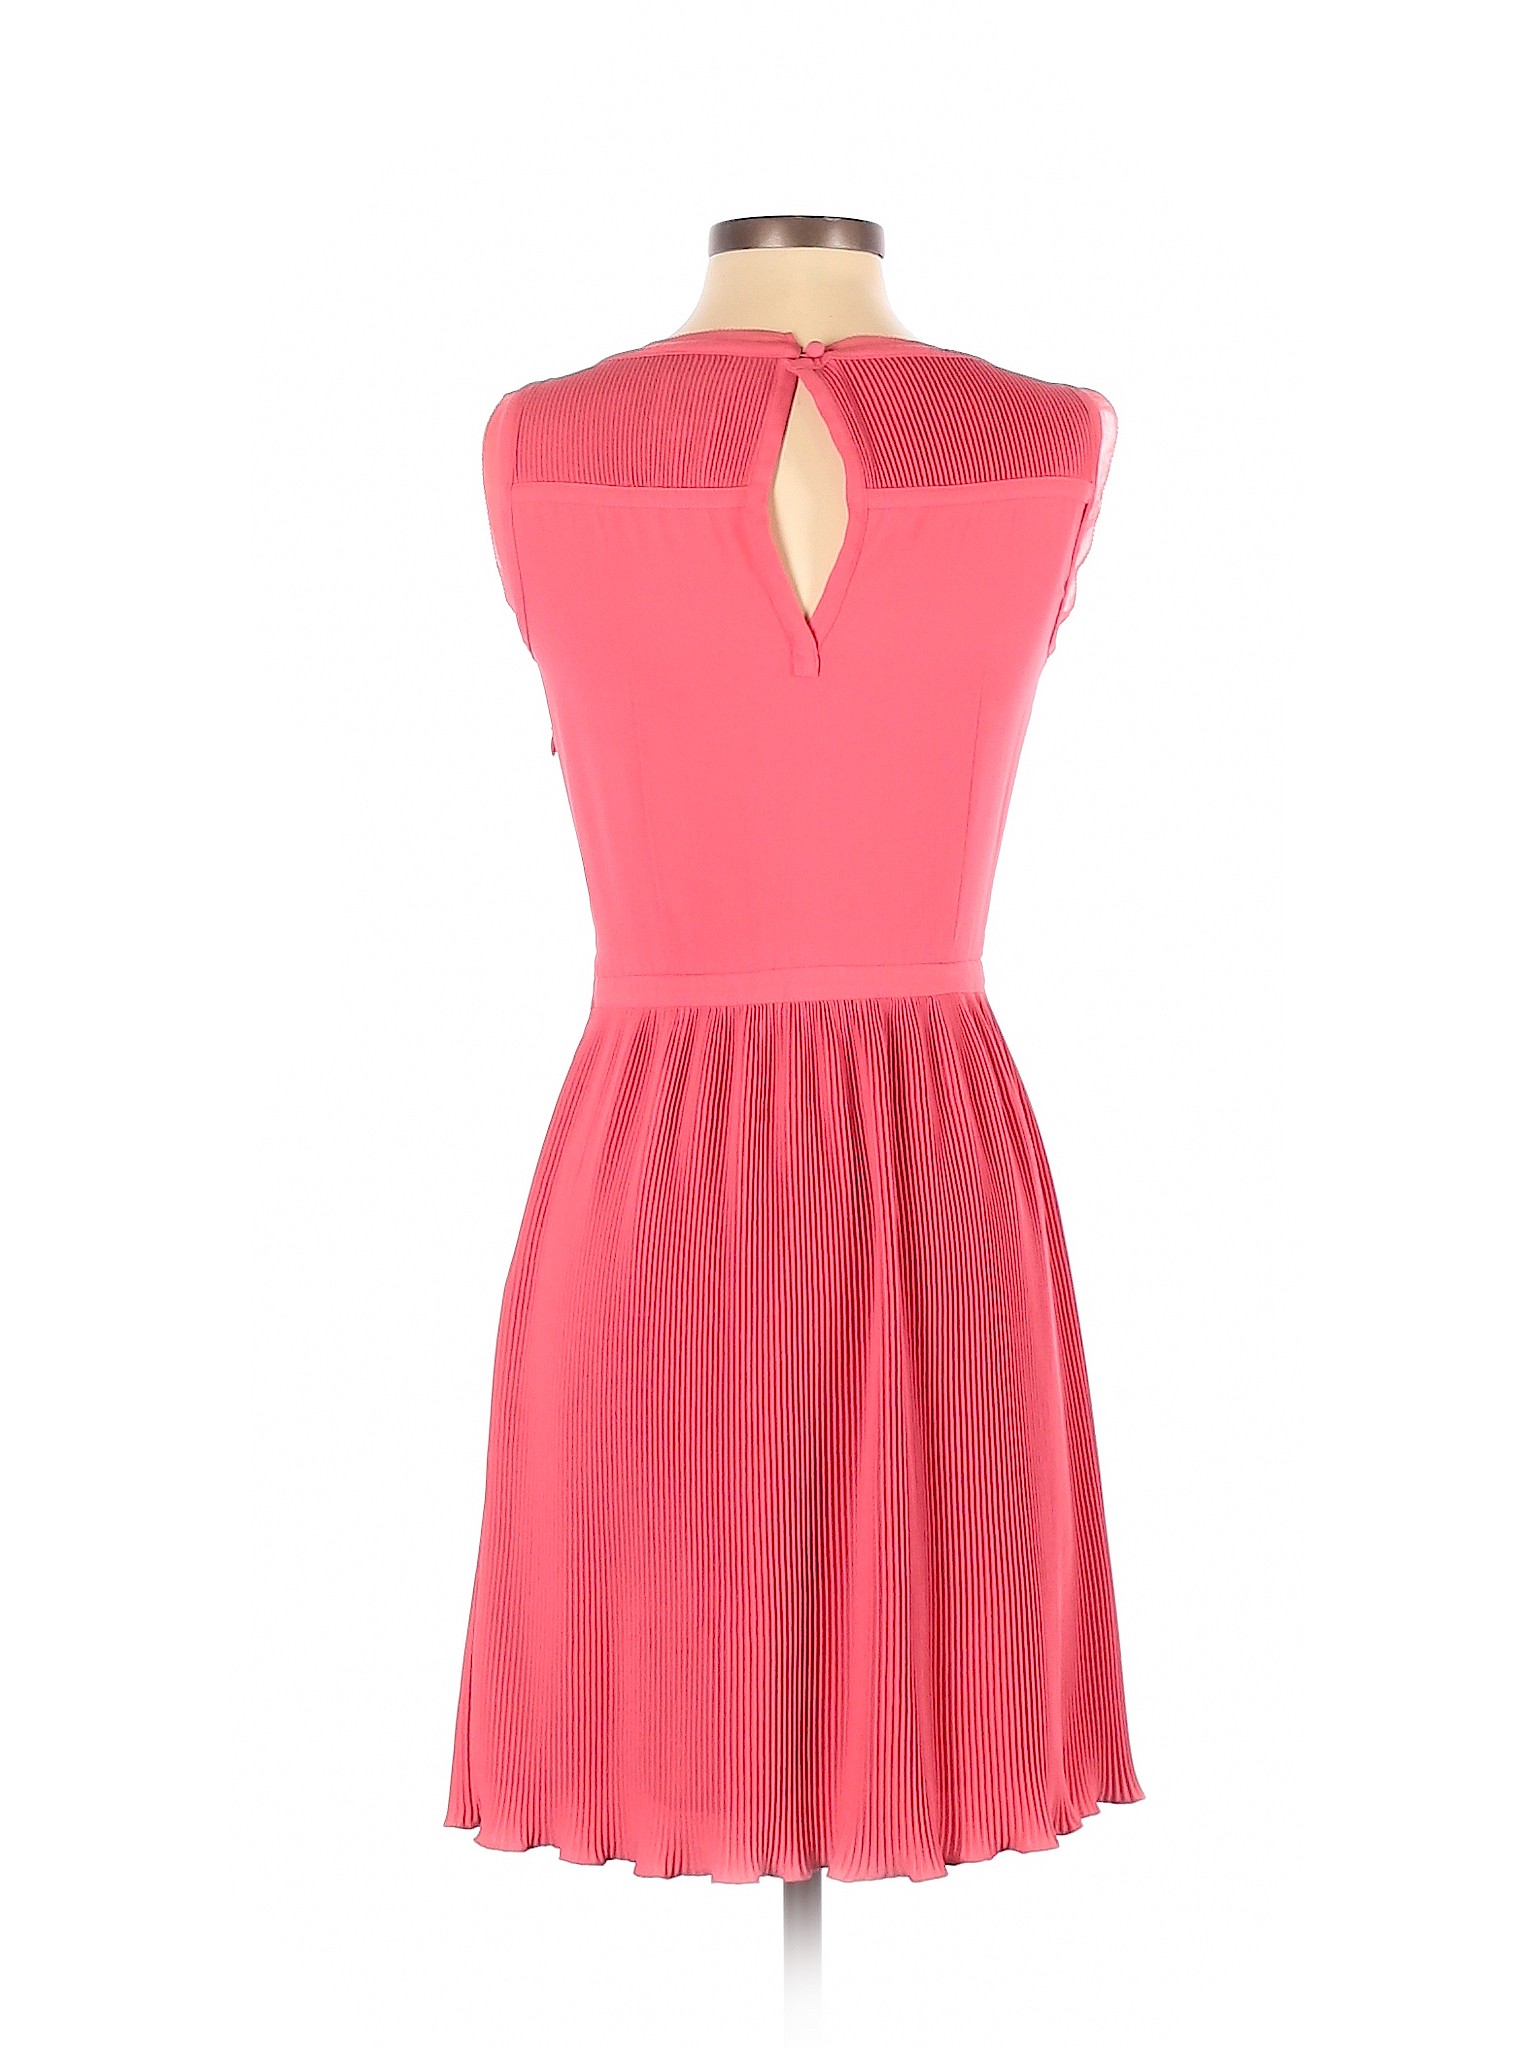 Reiss Women Pink Cocktail Dress 0 | eBay